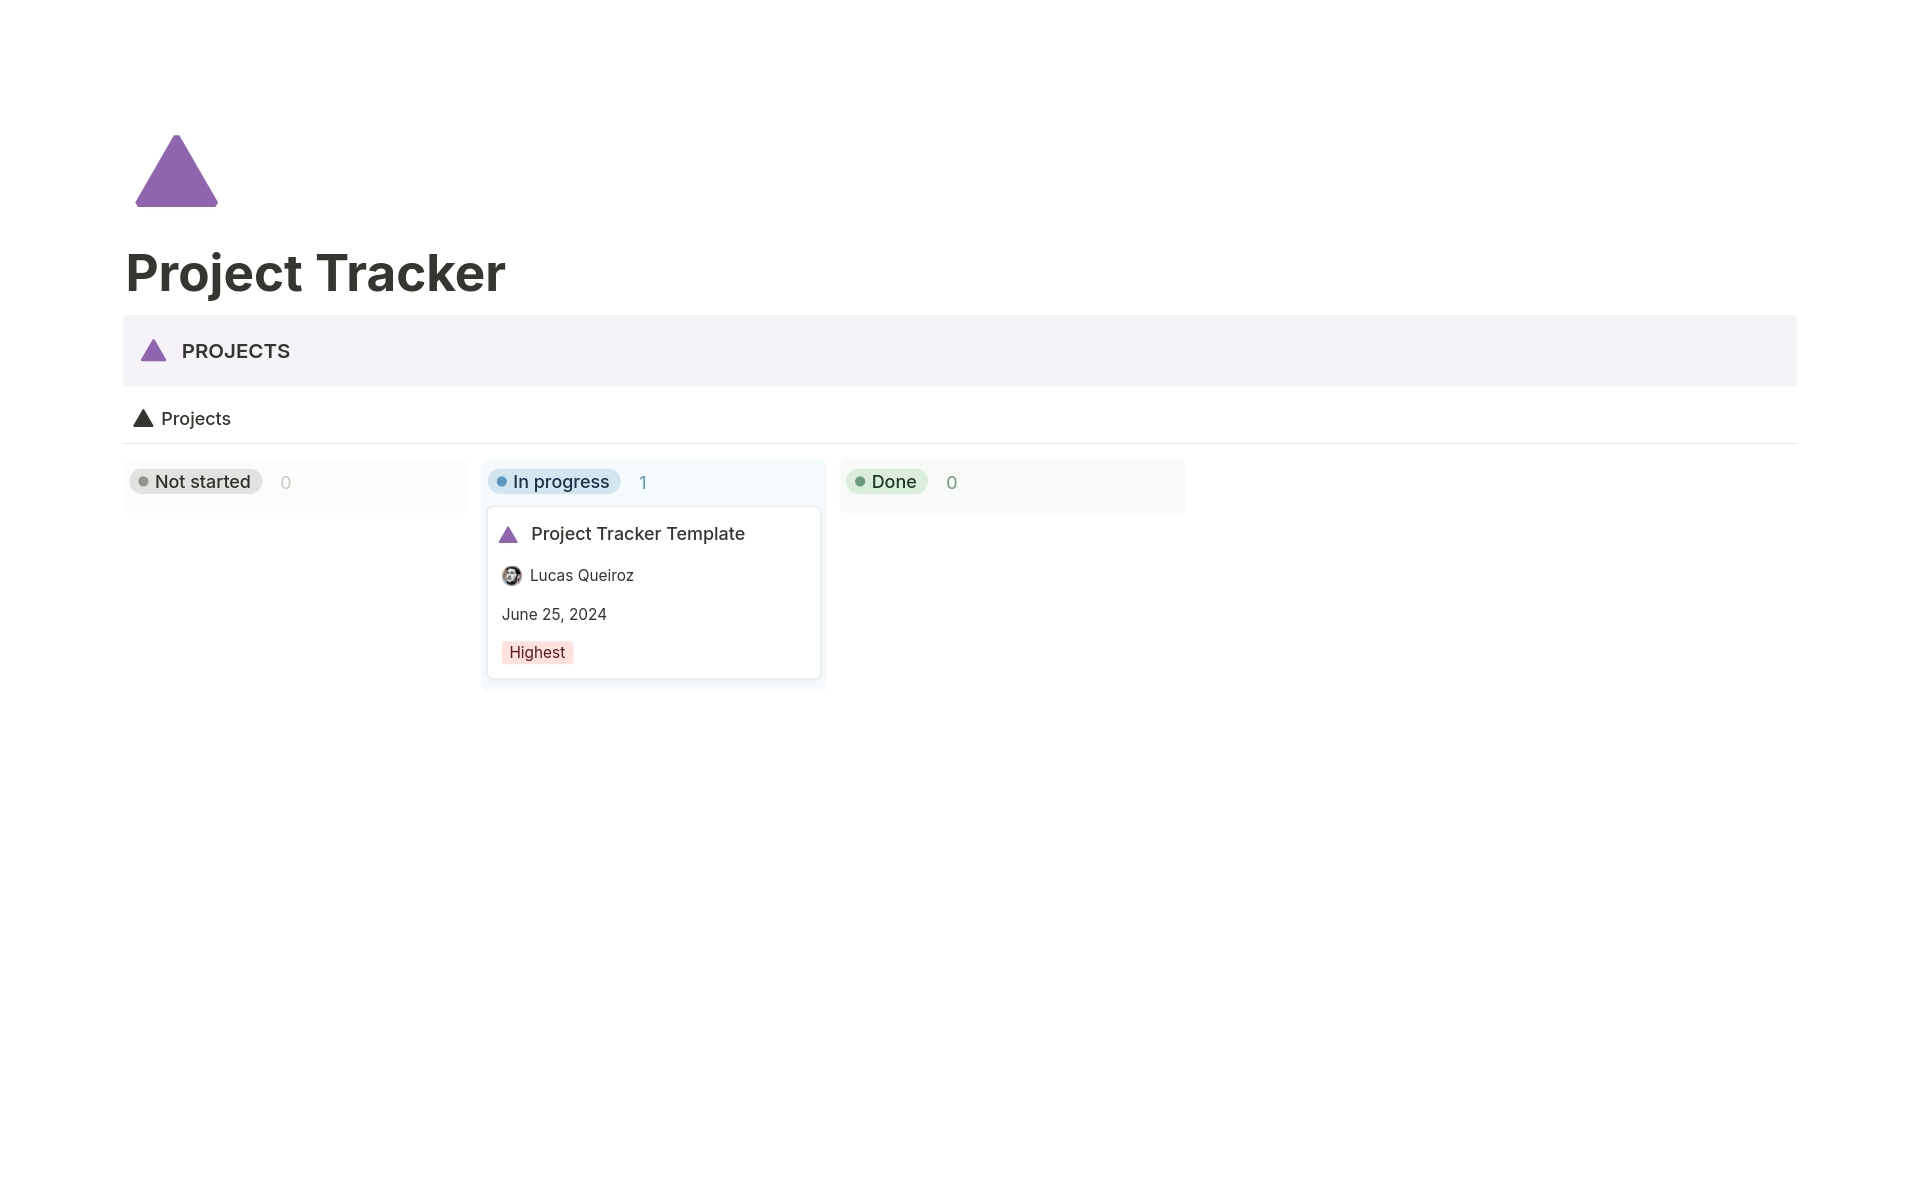 Vista previa de plantilla para Project Tracker